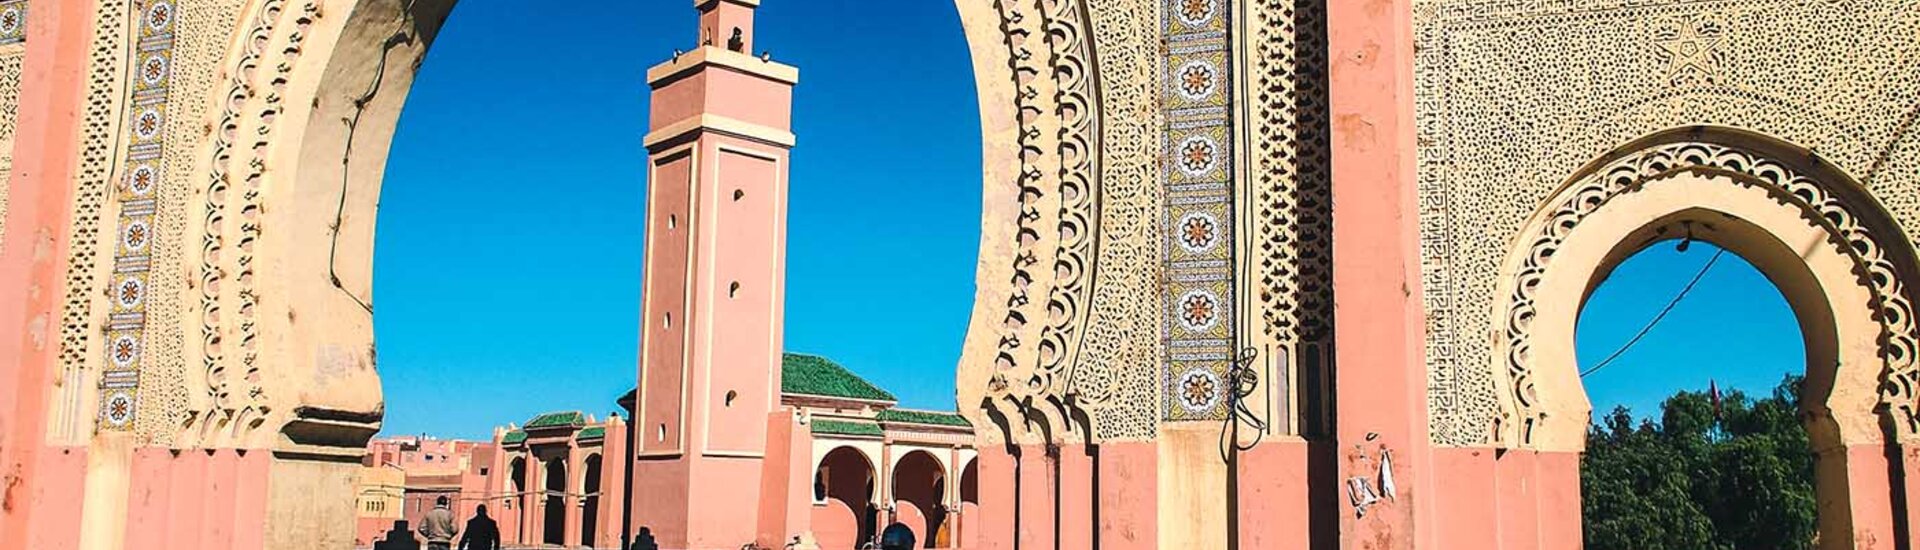 Moschee in Rissani, Marokko